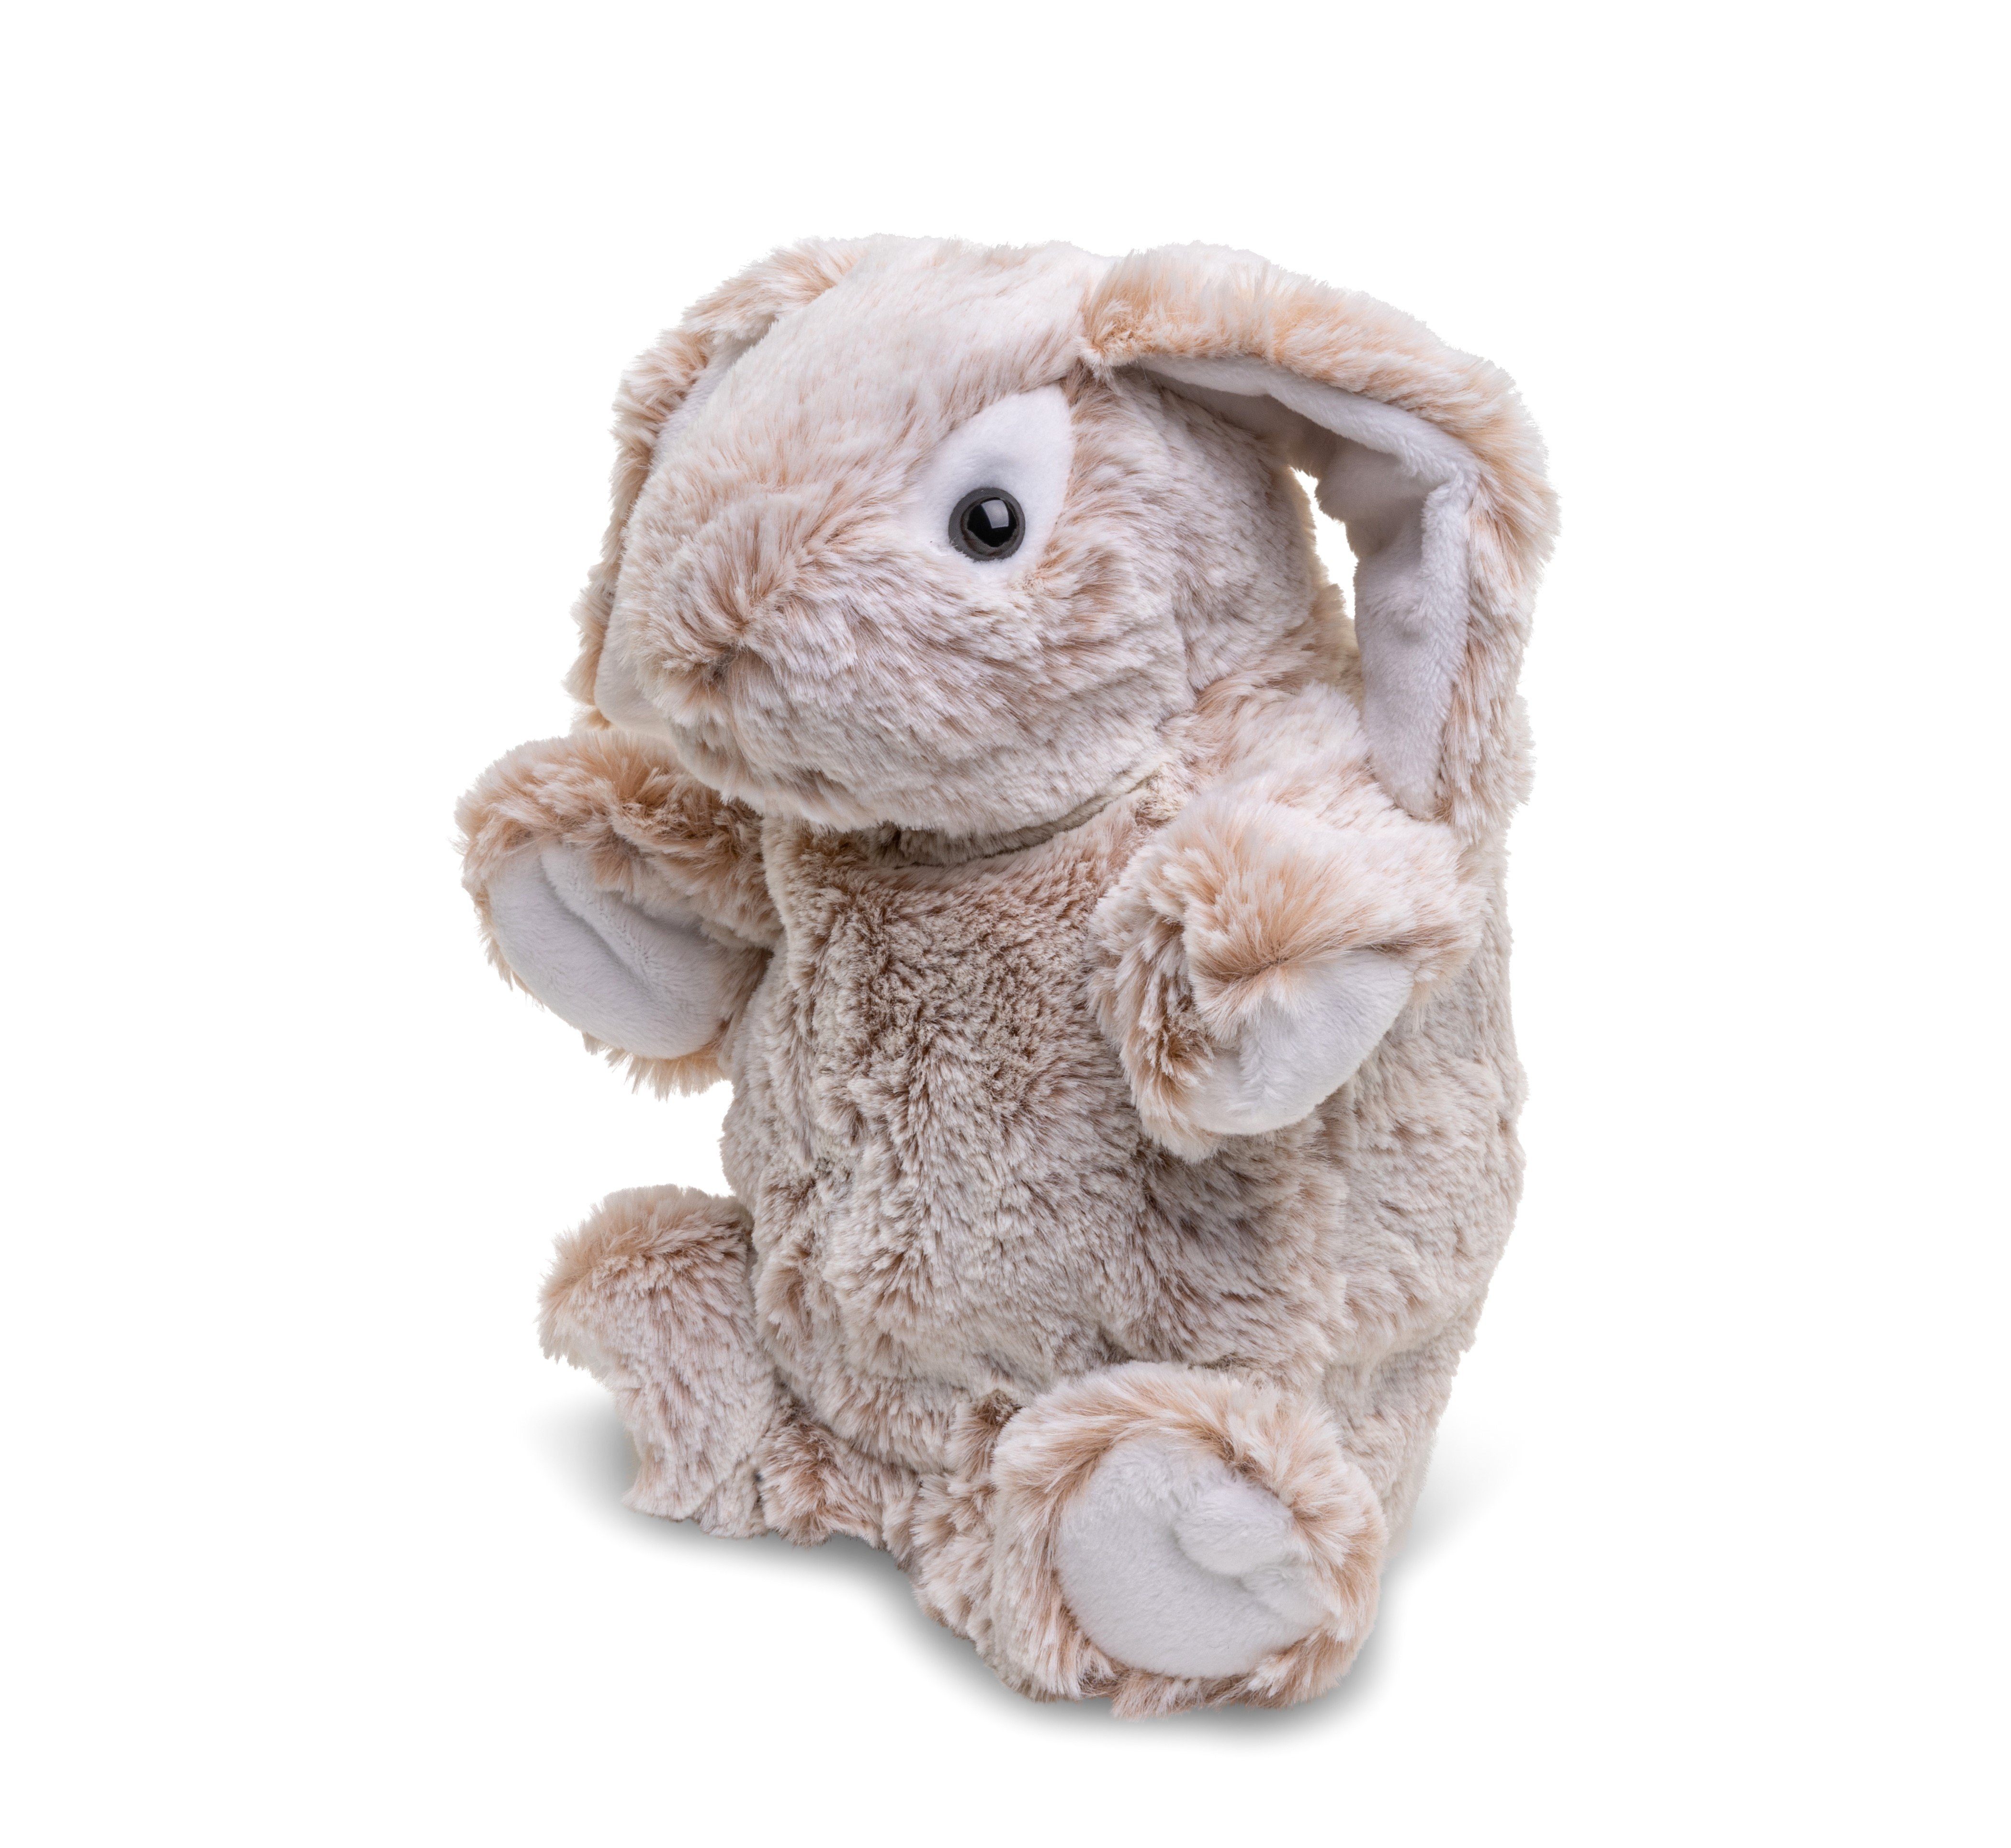 Husky recyceltes Plüschtier, % cm (Höhe) - Kuscheltier oder Plüsch-Puppe zu Uni-Toys - Handpuppe Füllmaterial - 24 Hase 100 -